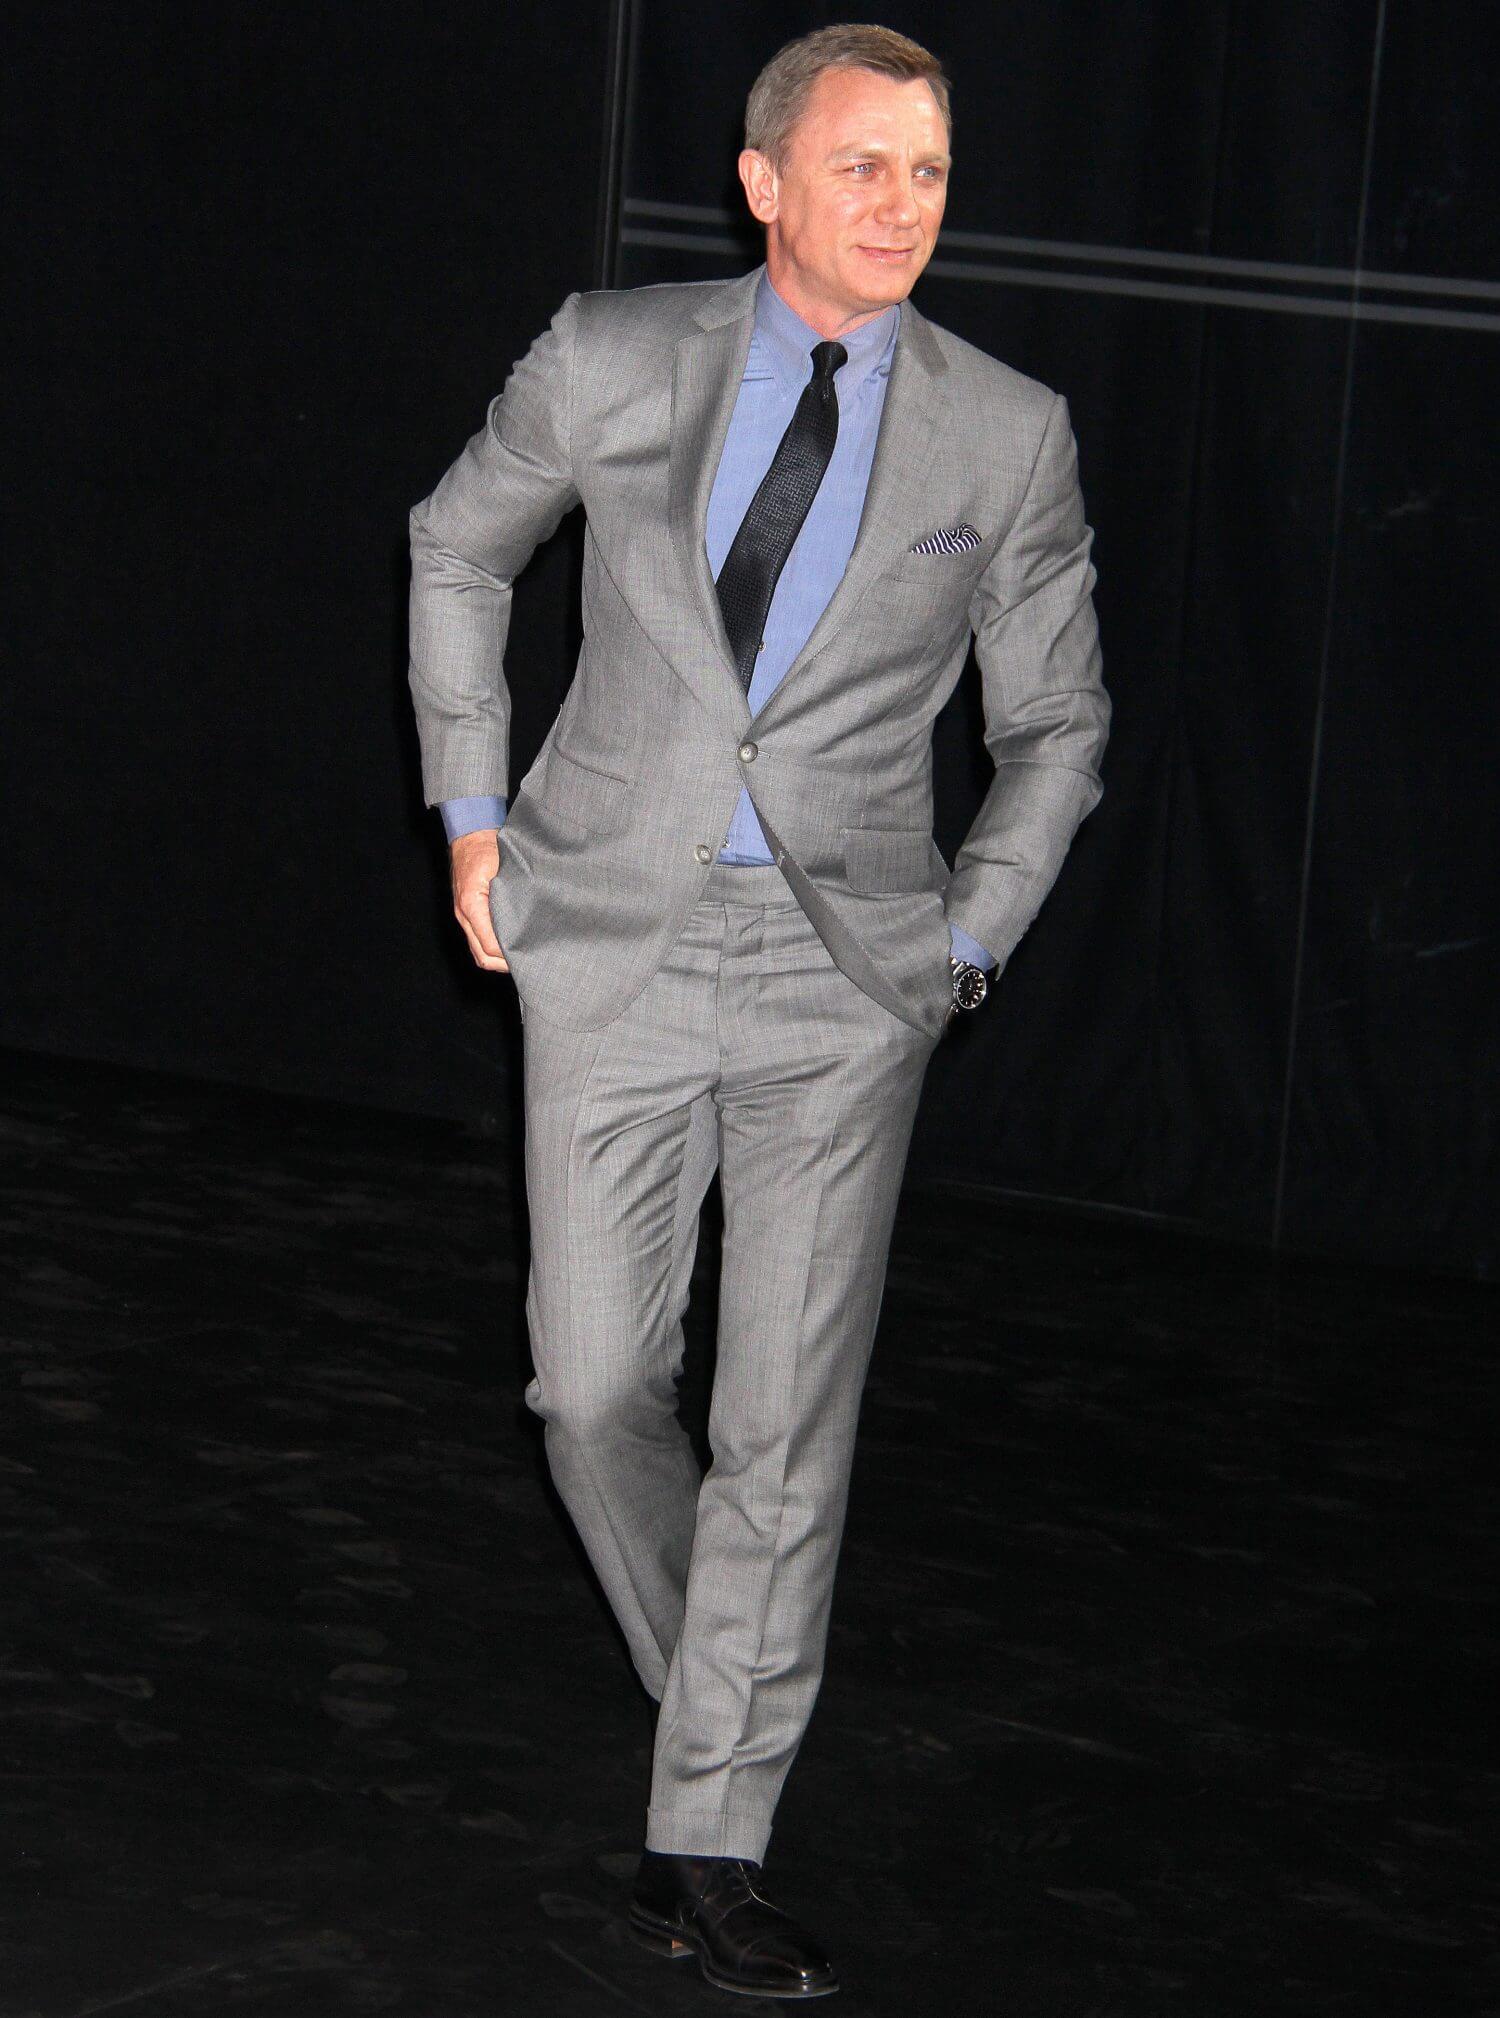 ダニエルクレイグのスーツスタイル魅力を解剖 007ジェームズボンド メンズファッションメディア Otokomaeotokomae 男前研究所